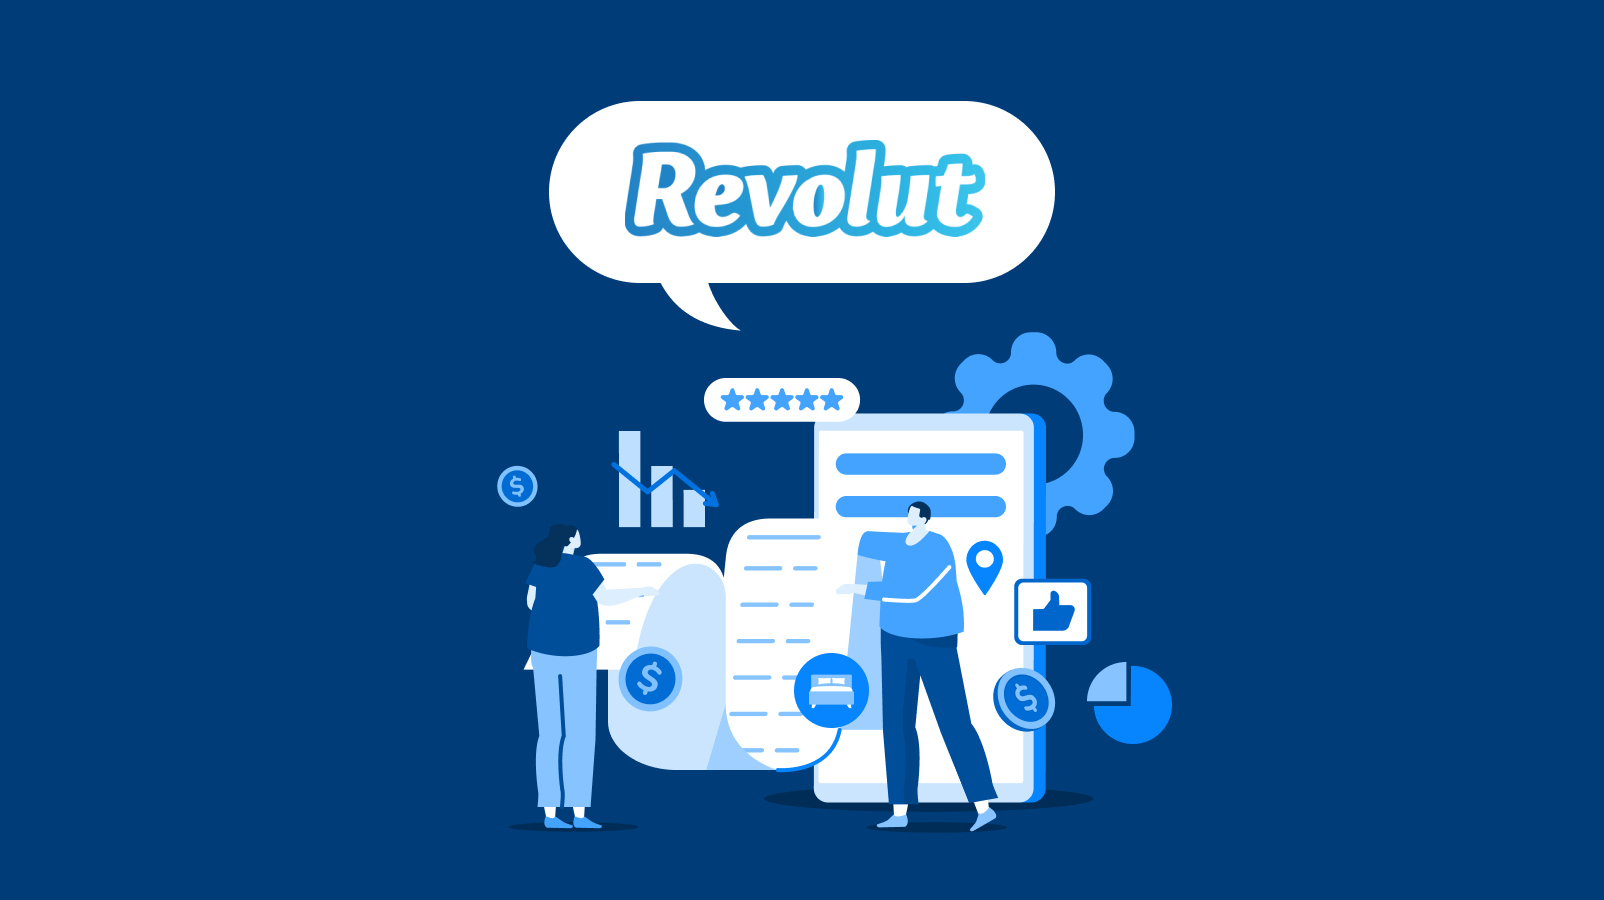 금융 슈퍼앱의 재미있는 이야기 3탄 : 레볼루트(Revolut)